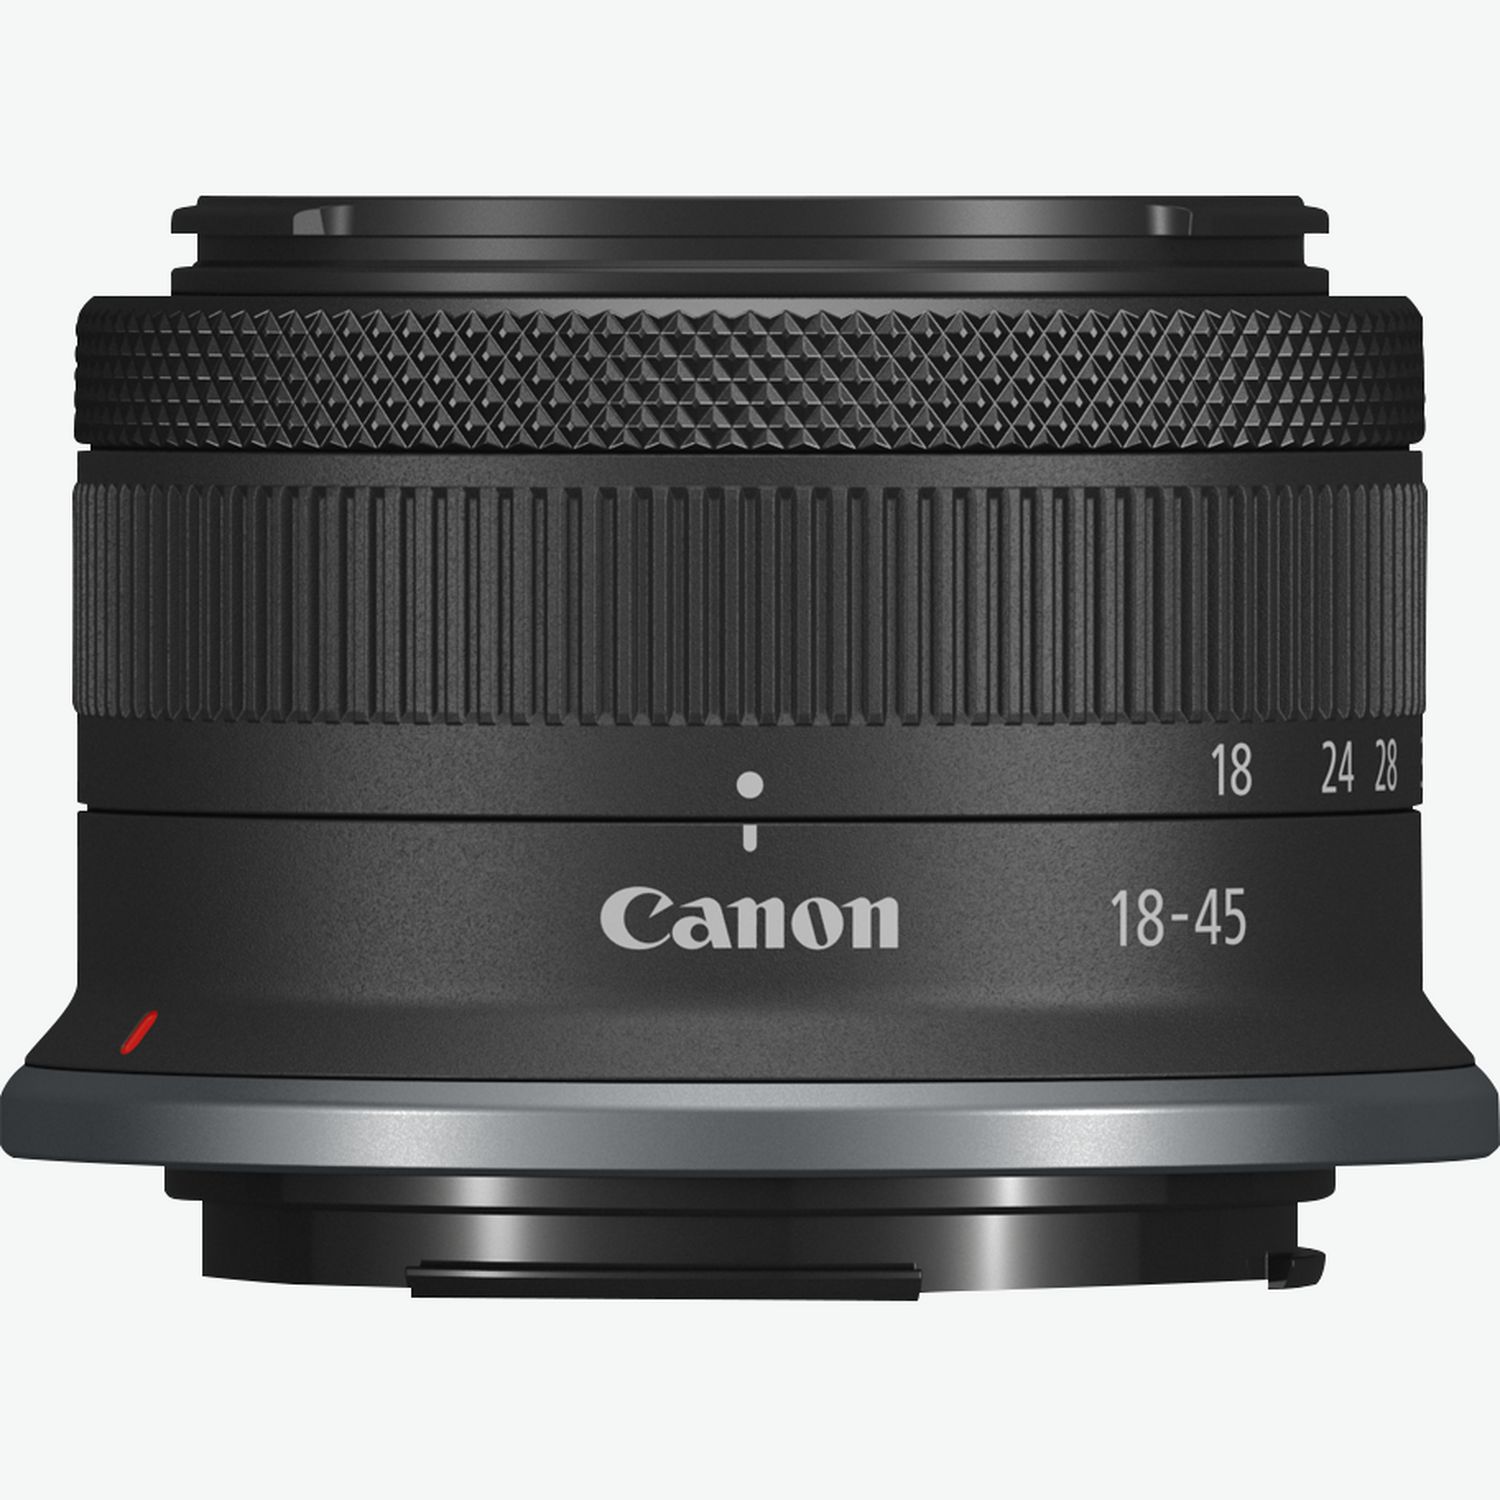 Canon EOS Kamera Canon Shop — Buy in WLAN-Kameras Gehäuse R10 Schweiz spiegellose